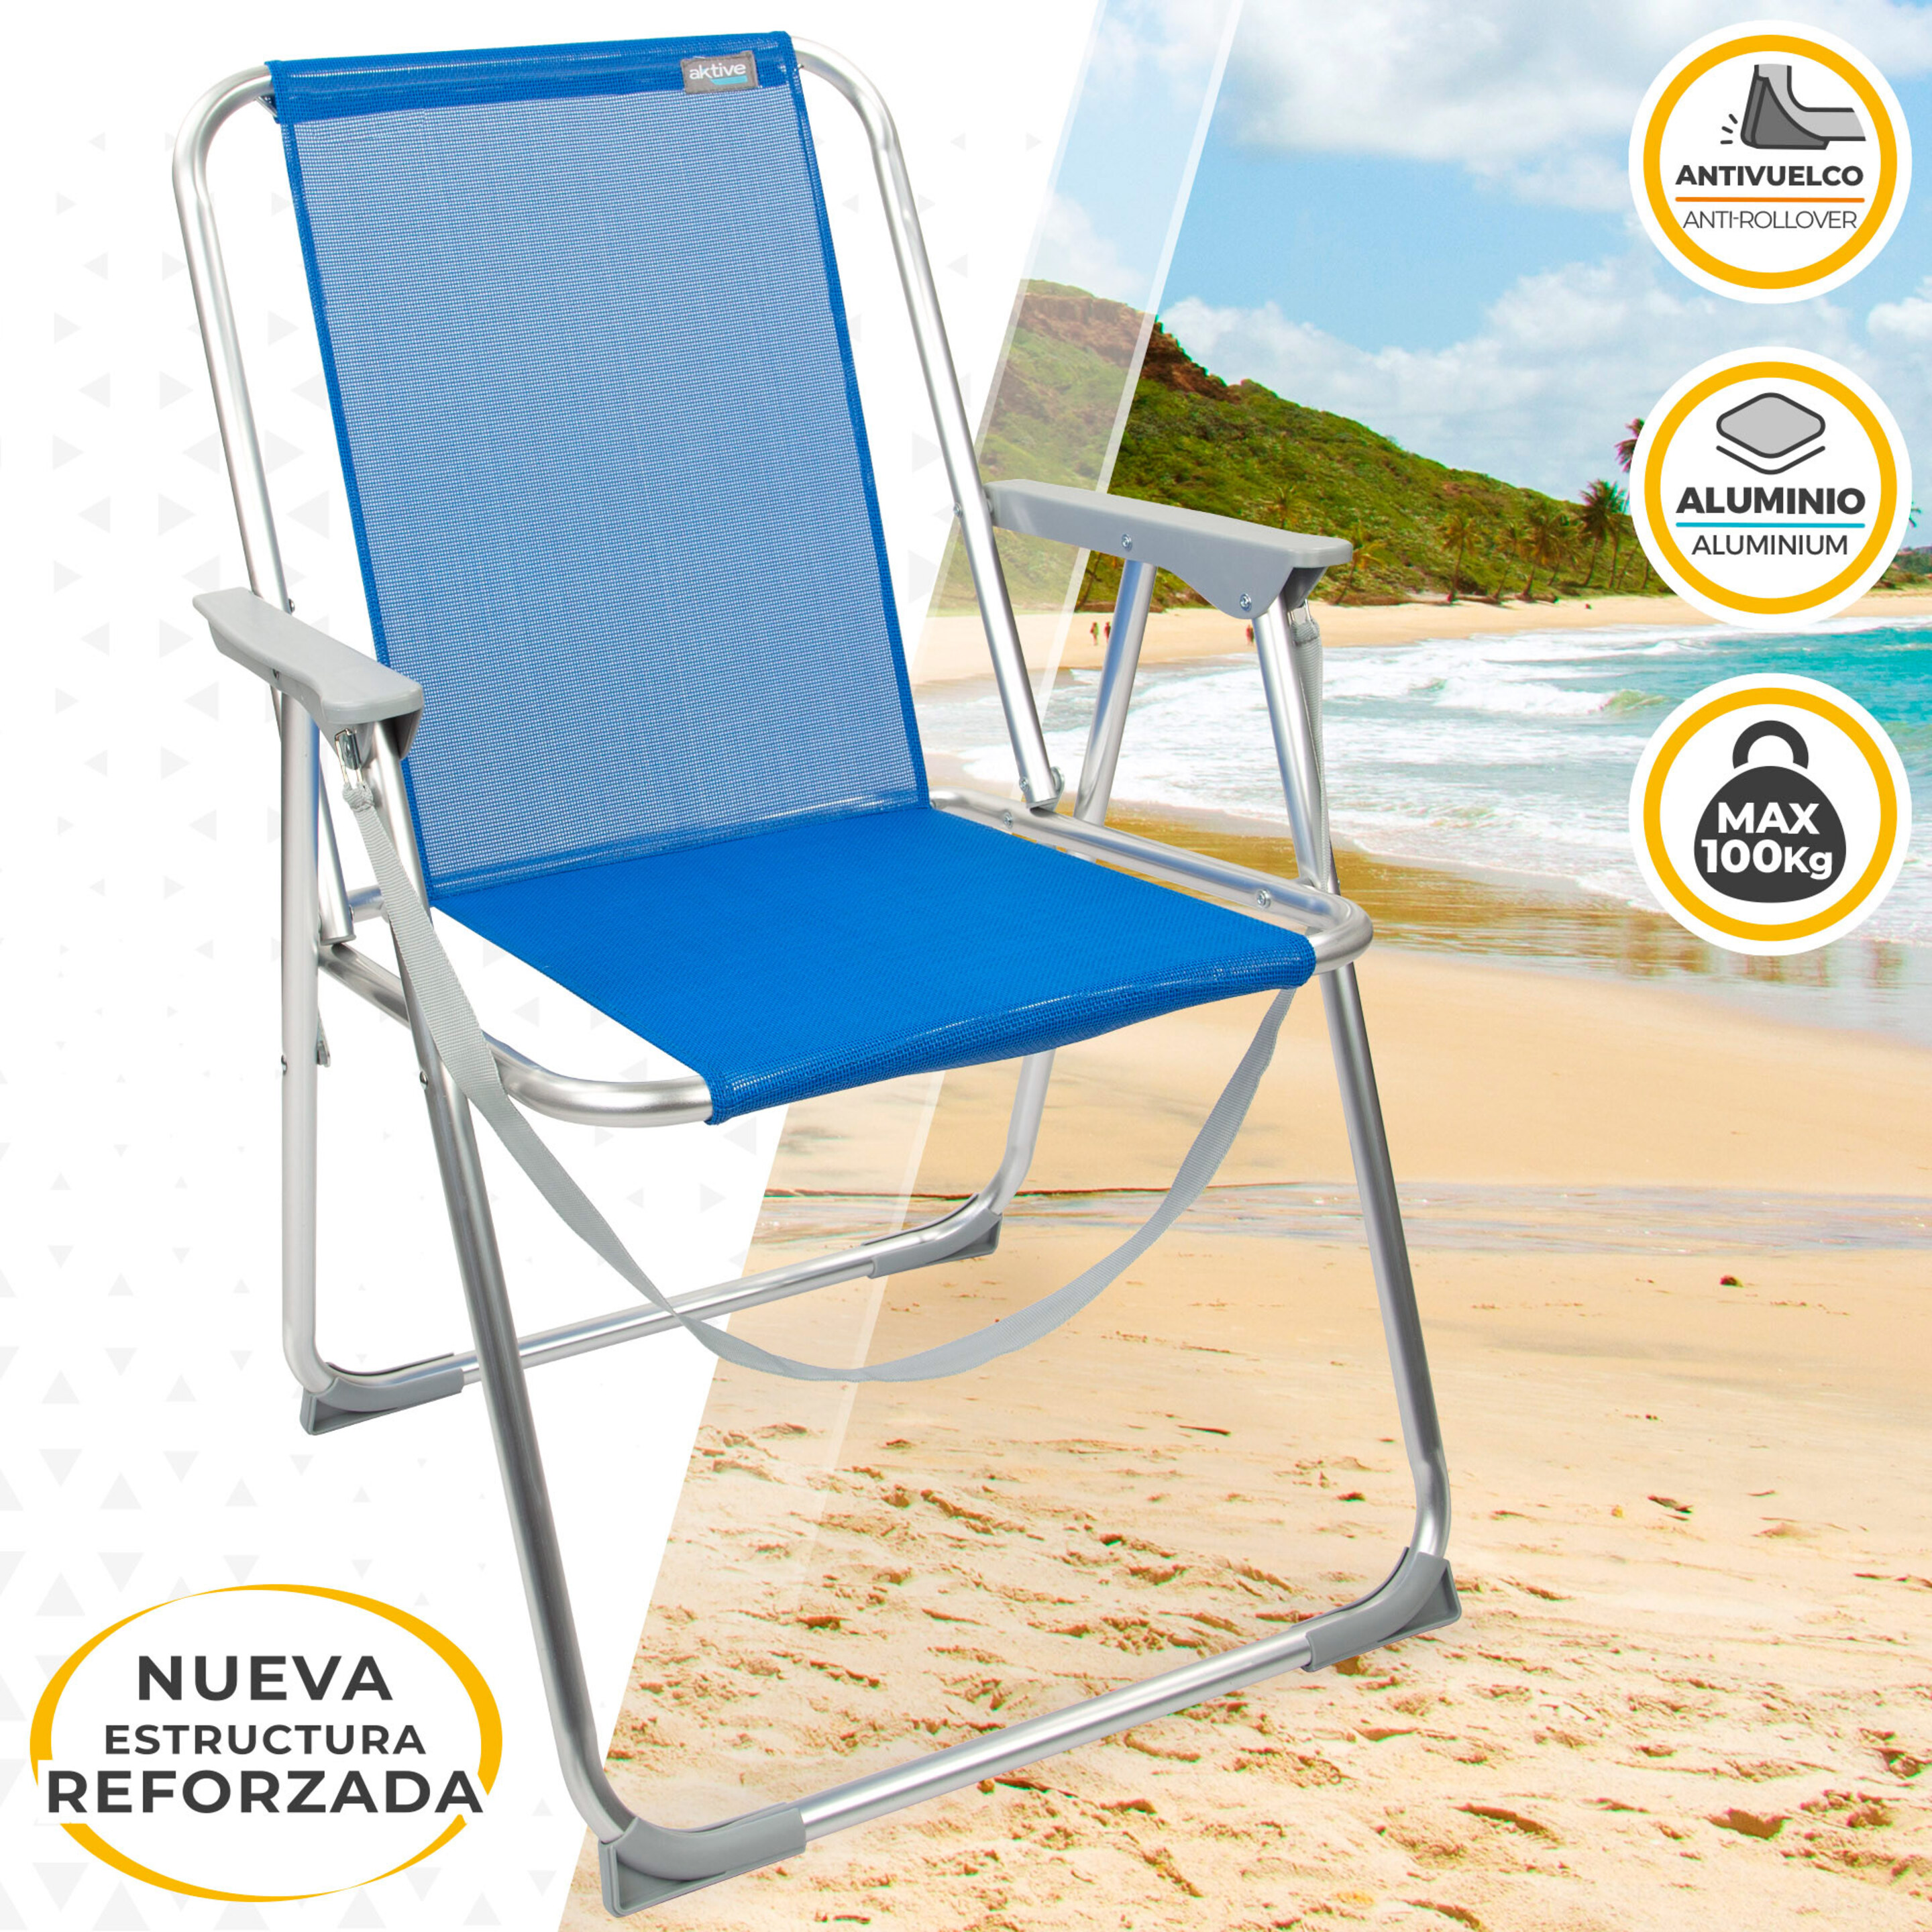 Cadeira De Praia Azul Dobrável Aktive Beach